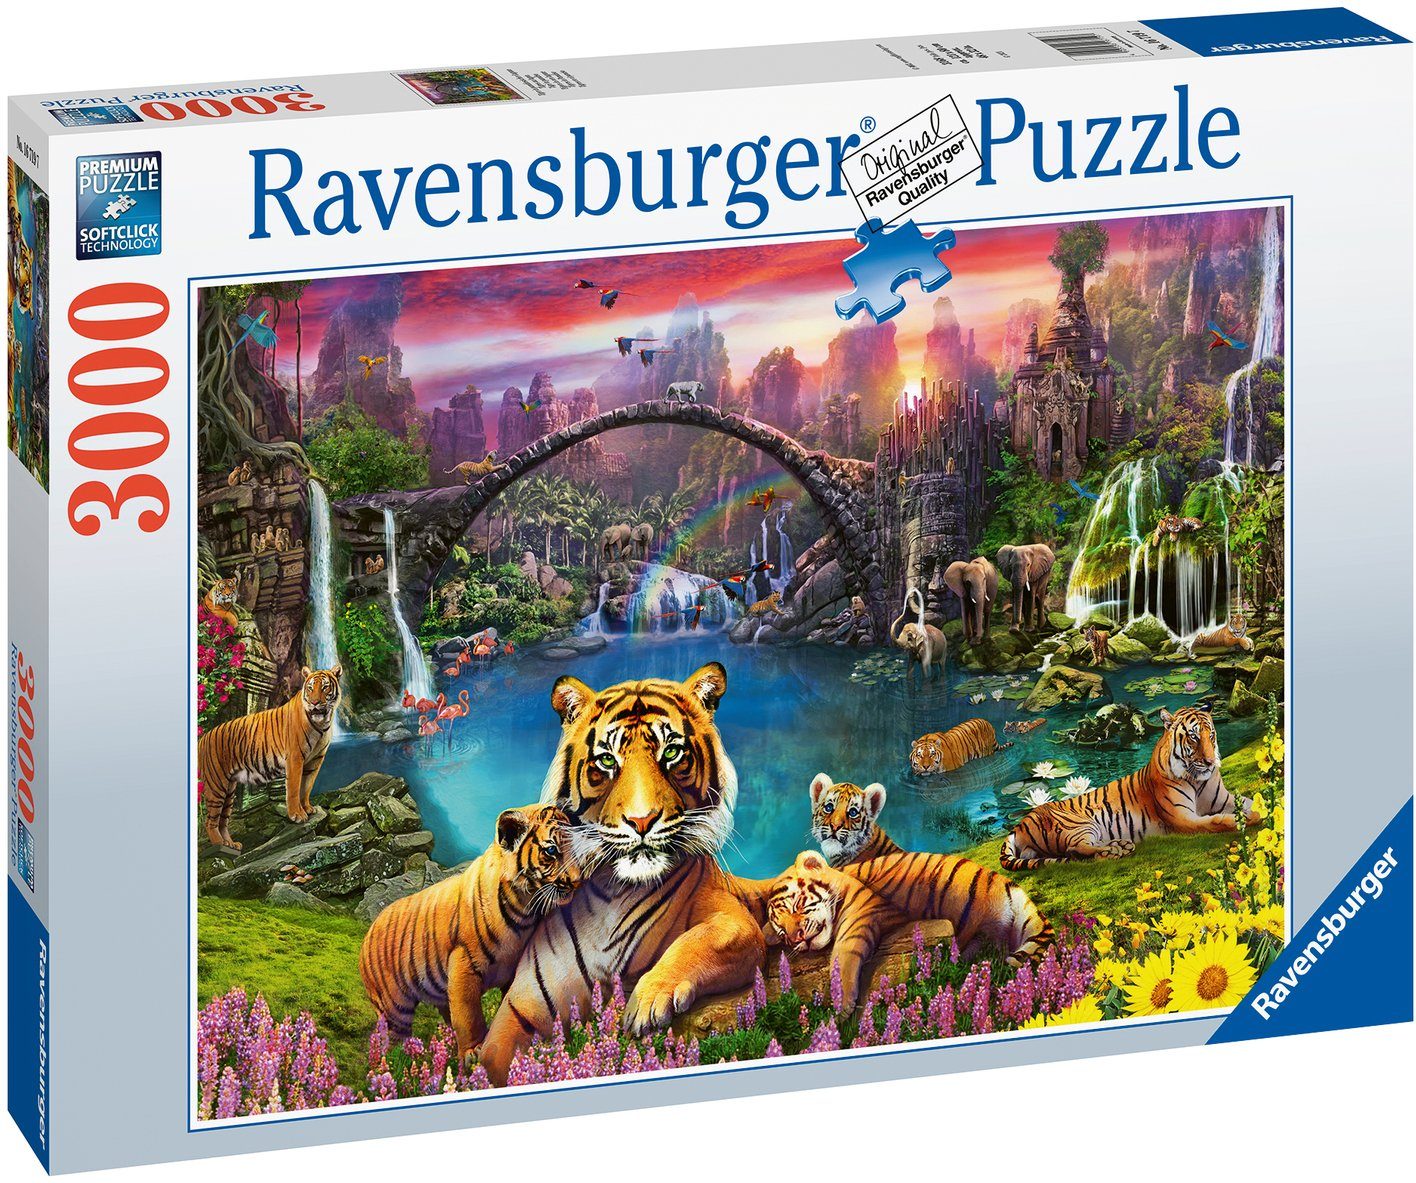 Ravensburger Tiger - schützt in FSC® weltweit Lagune, - in Germany, Wald paradiesischer Puzzle Made Puzzleteile, 3000